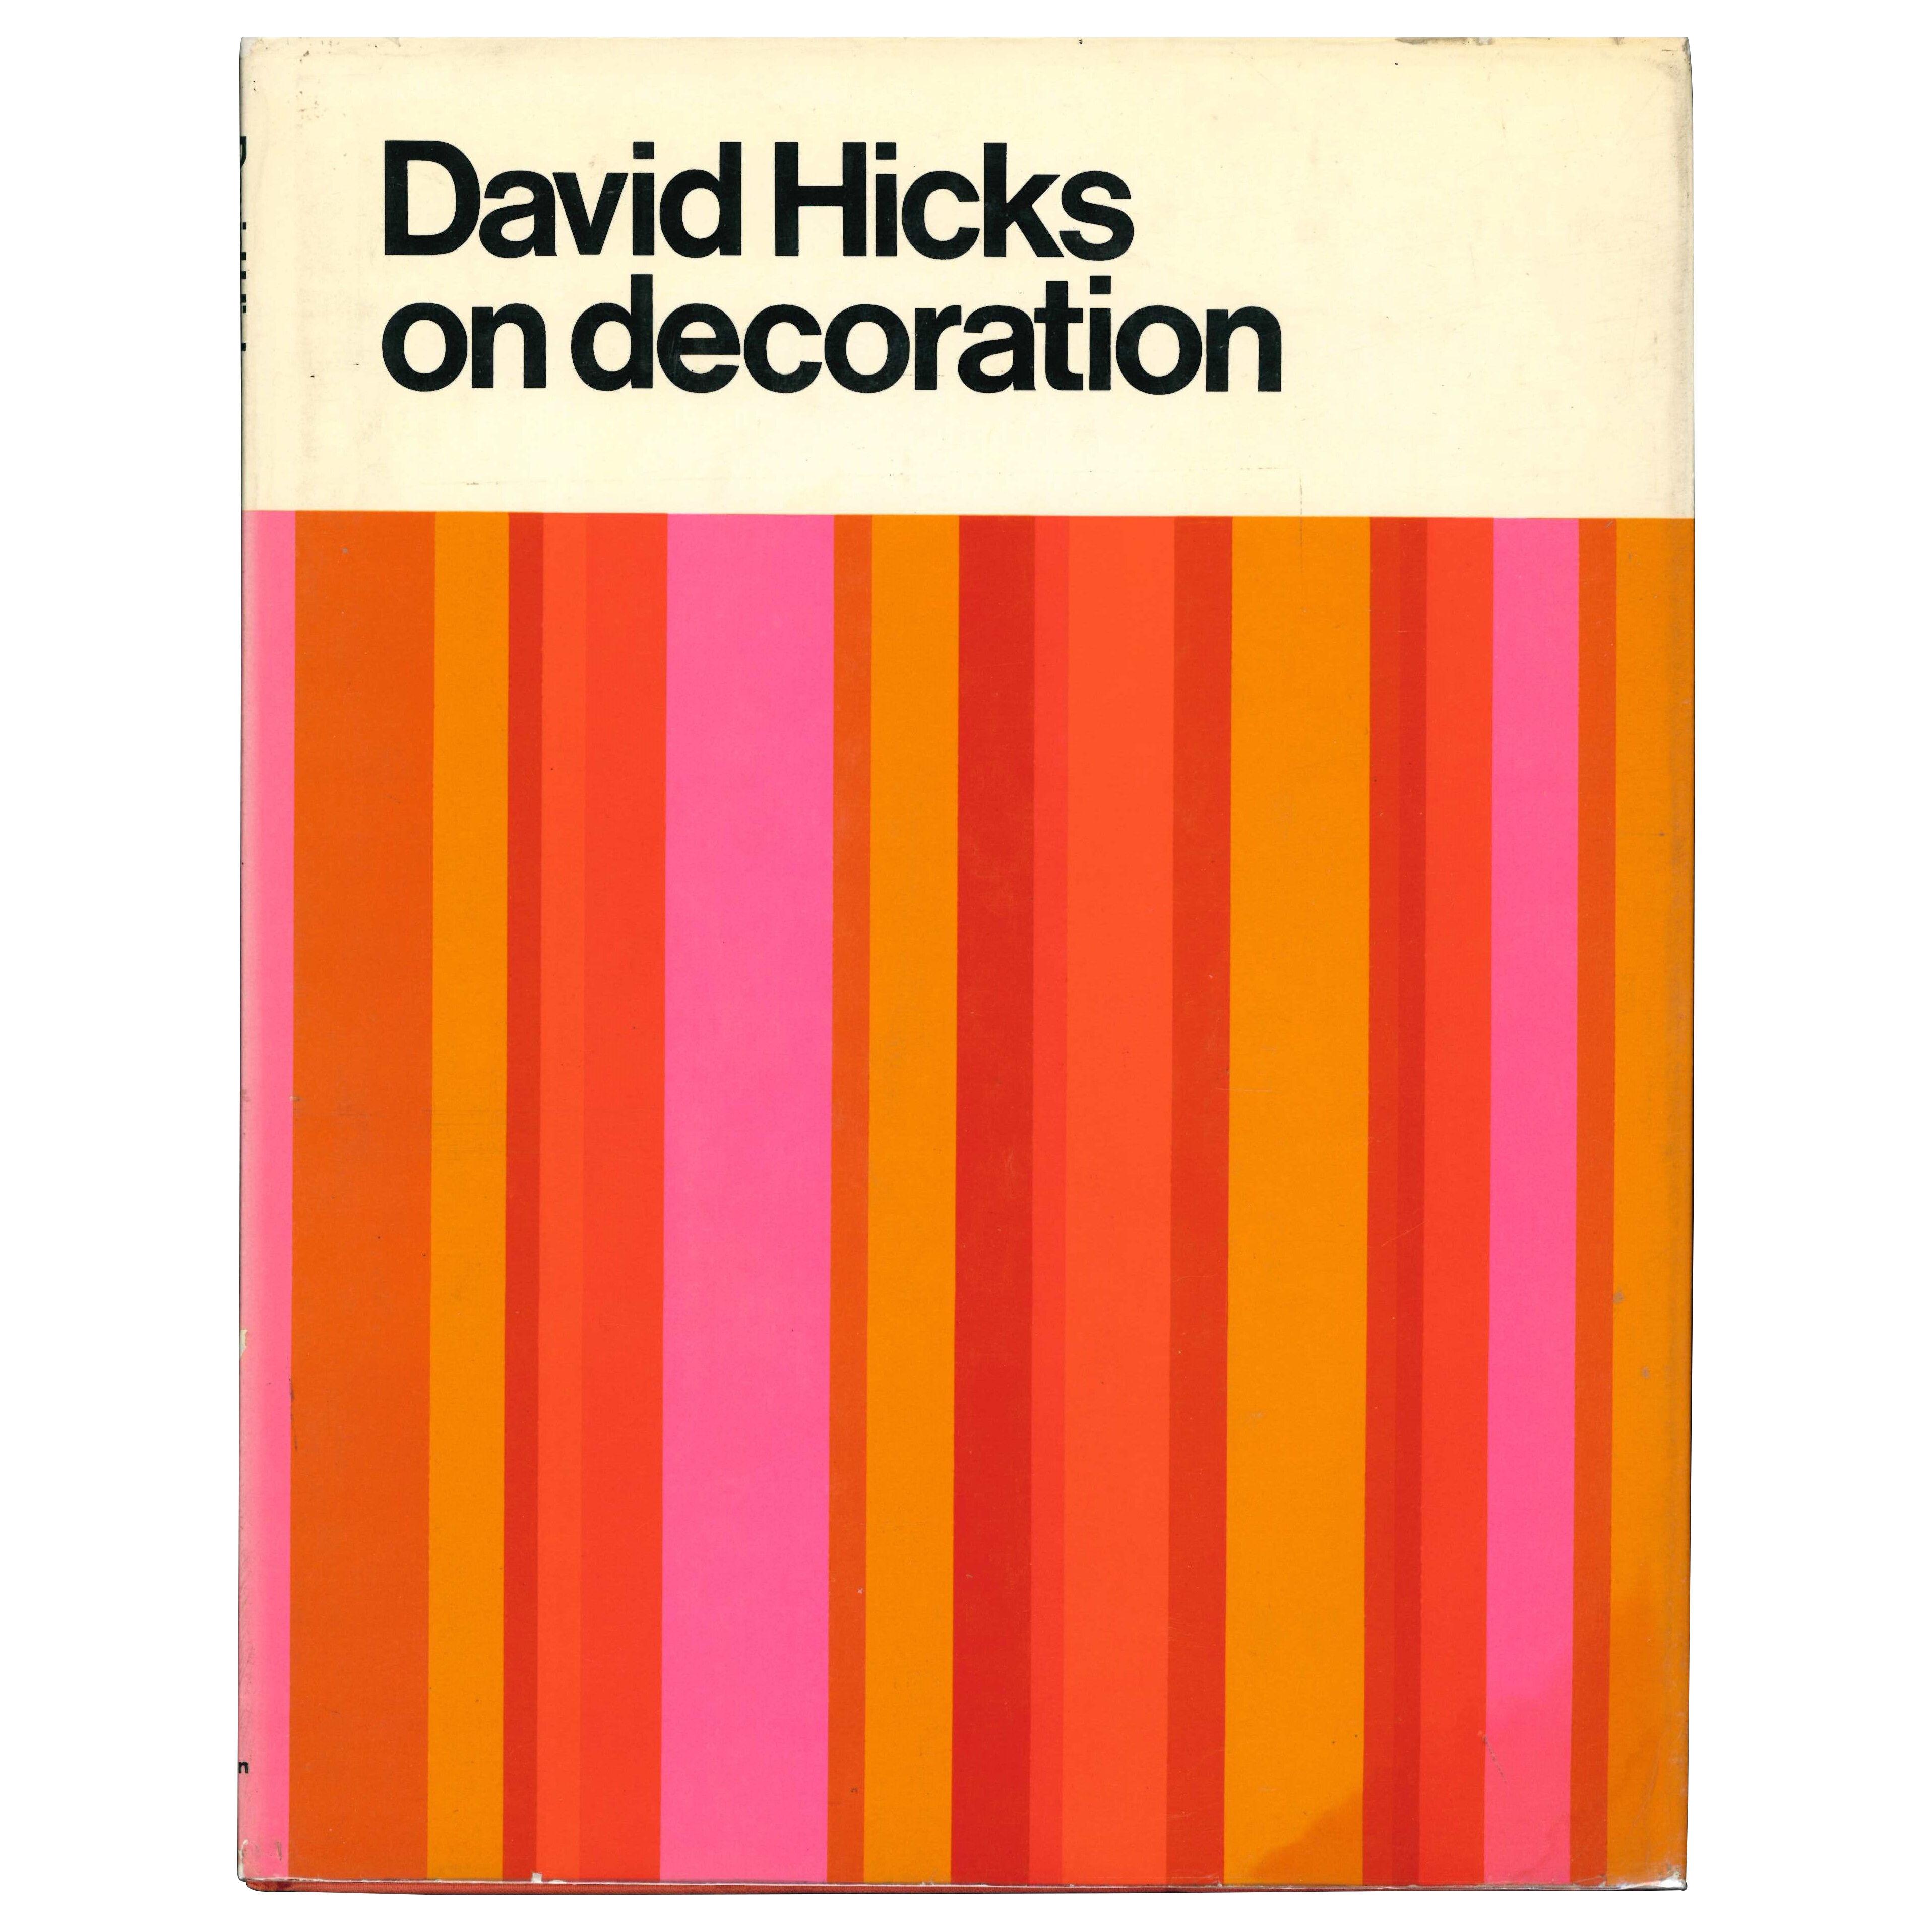 SET OF FIVE DAVID HICKS DESIGN BOOKS